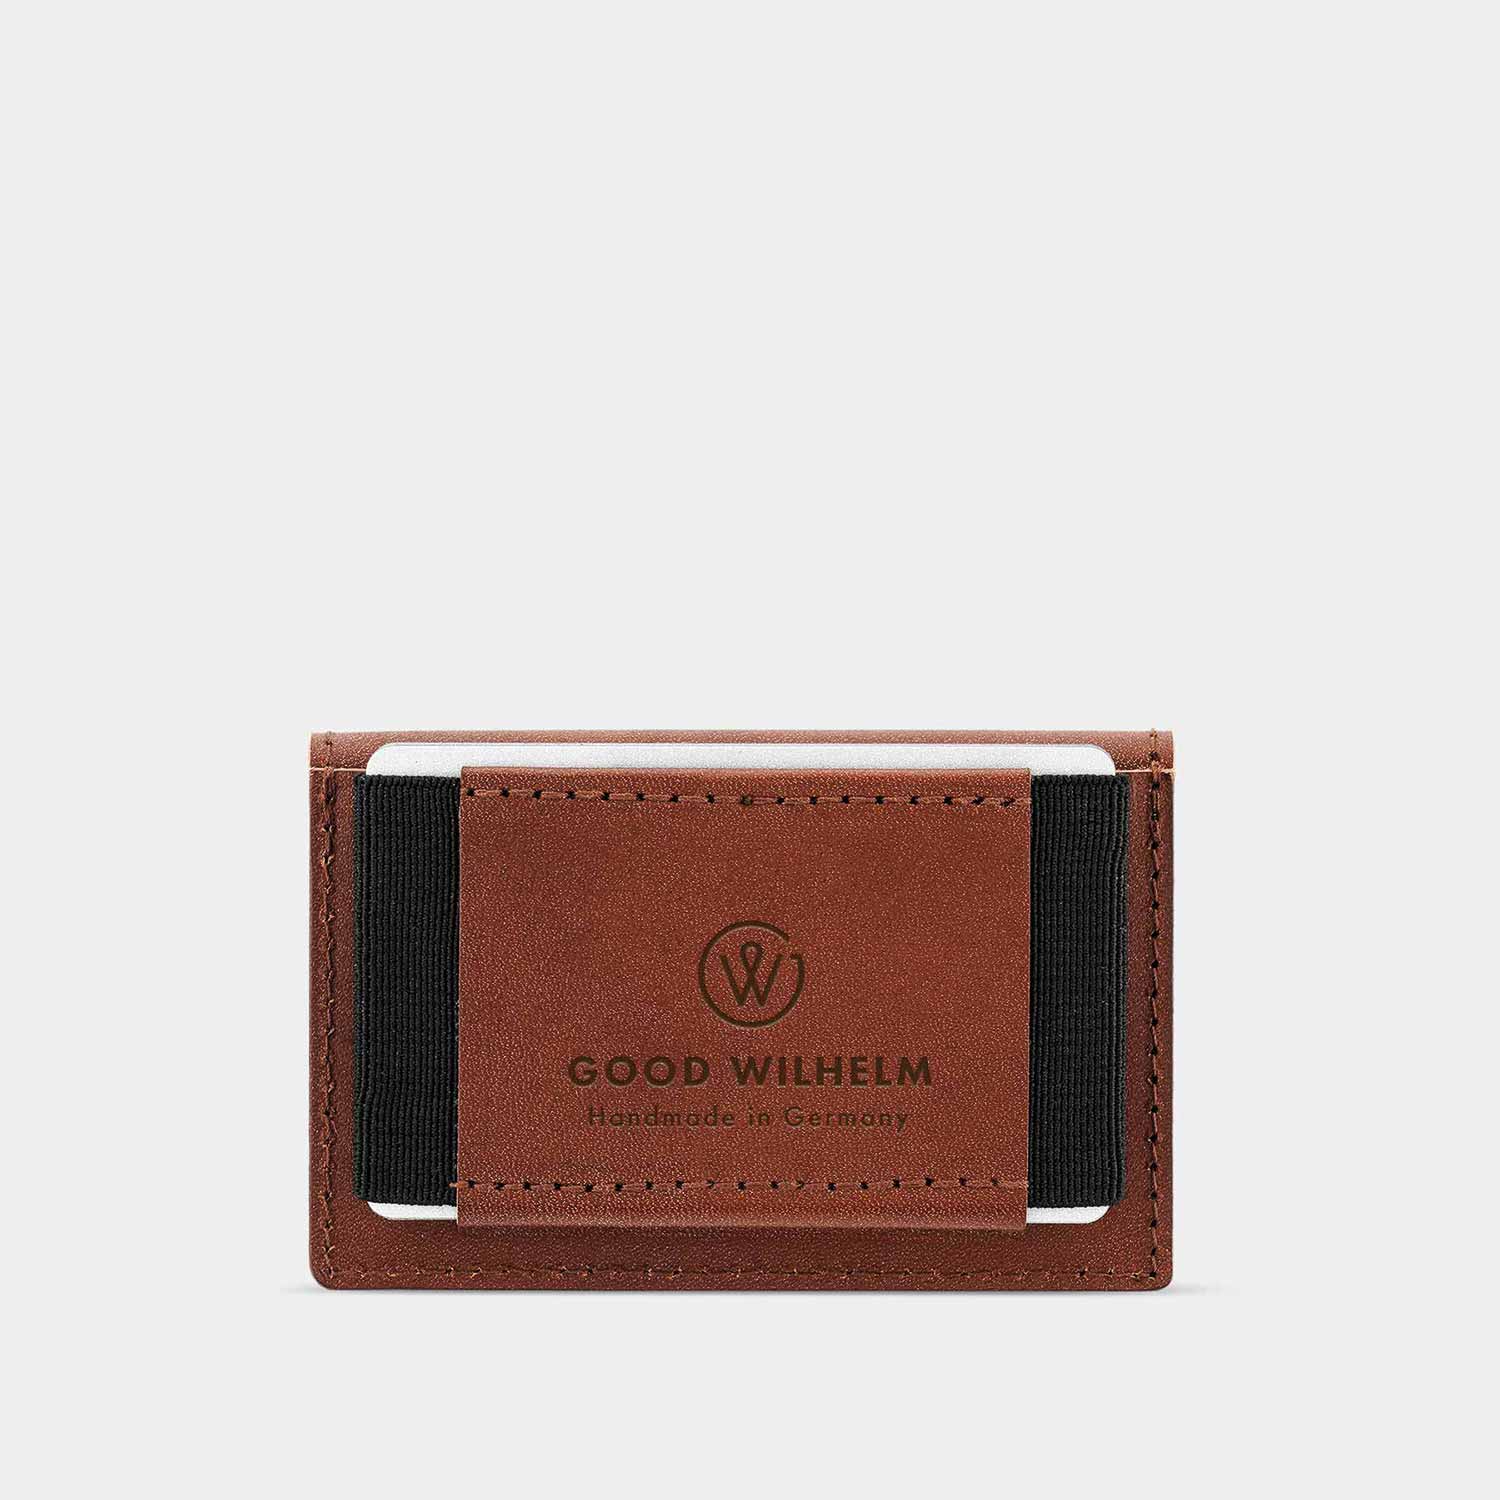 Kartenfach des mini Portemonnaies OTTO von Goodwilhelm in der Farbe cognac